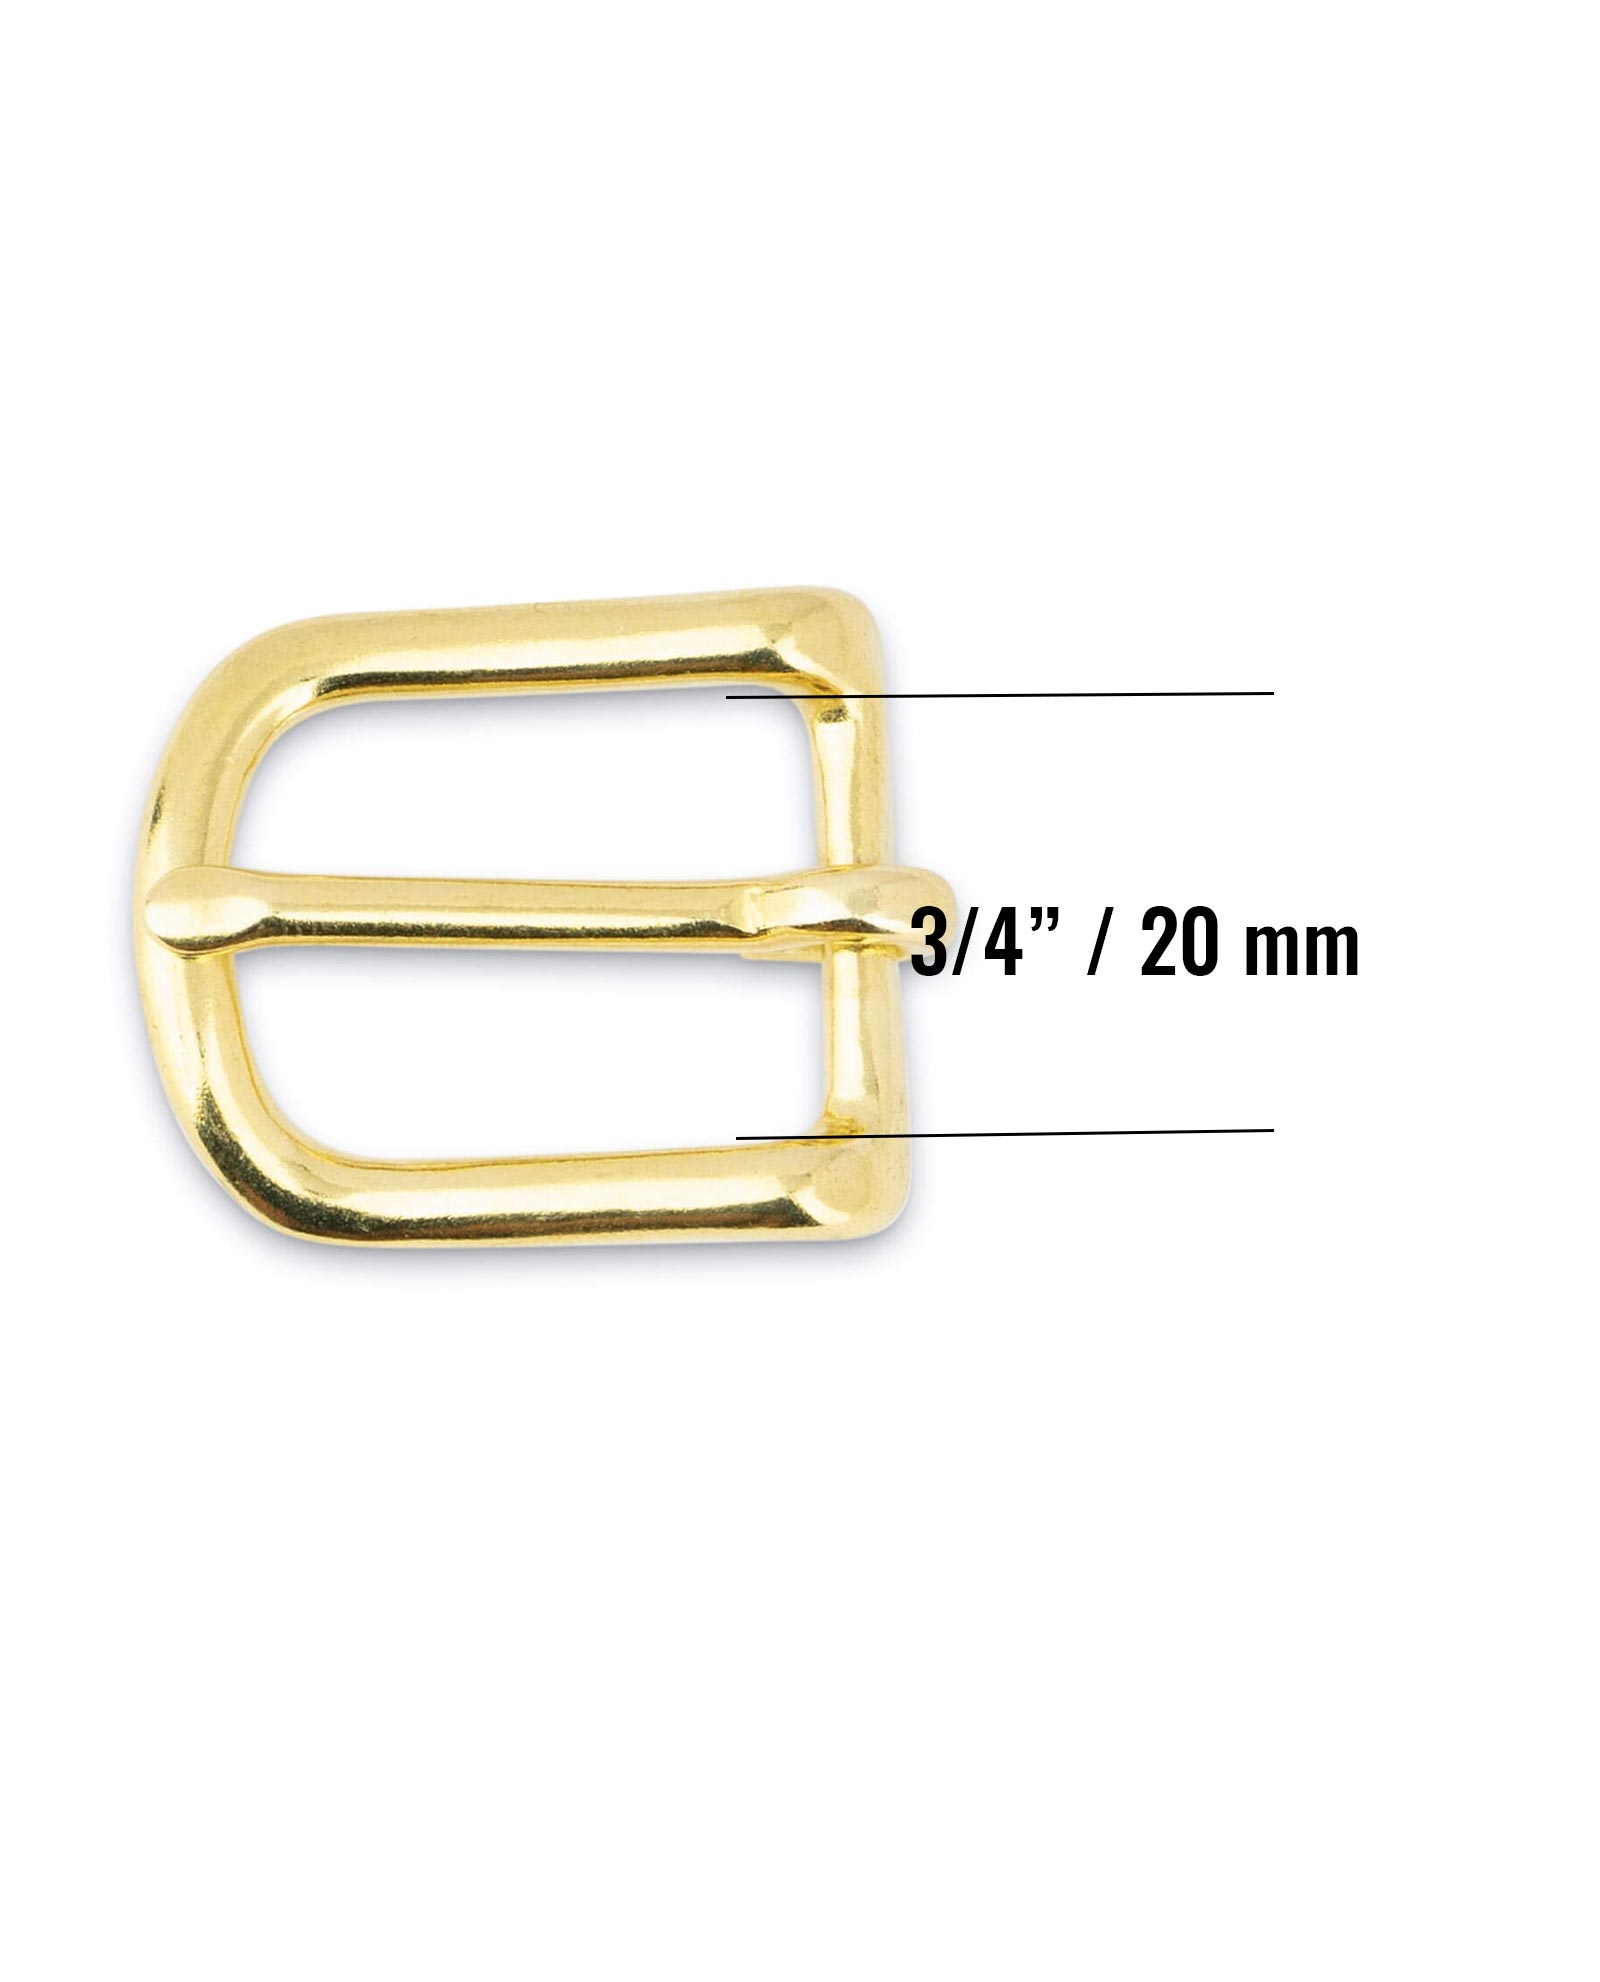 Buy Small Brass Belt Buckle 20 mm | LeatherBeltsOnline.com